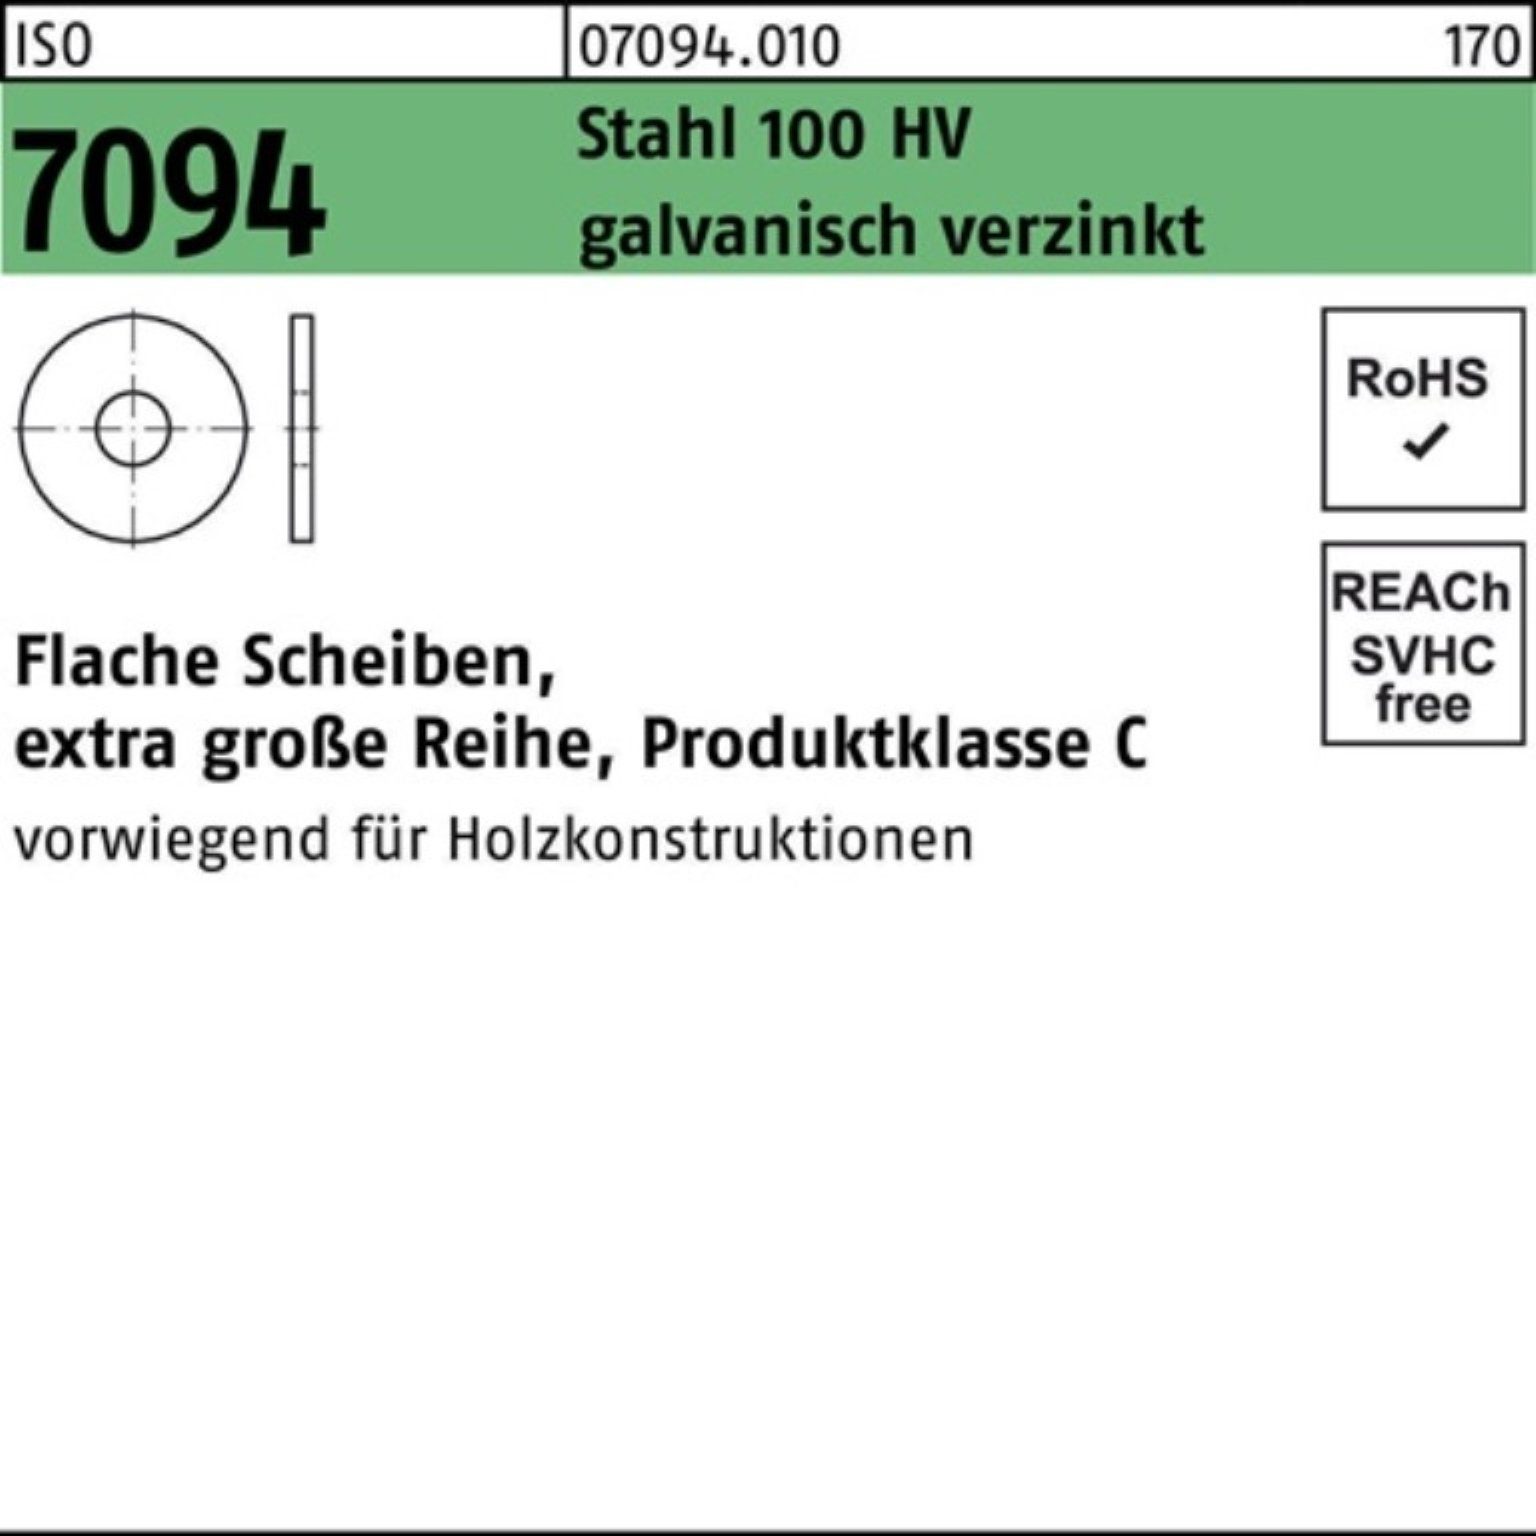 25 100 Unterlegscheibe Reyher Unterlegscheibe Stü 33 7094 ISO galv.verz. 100er Stahl HV Pack